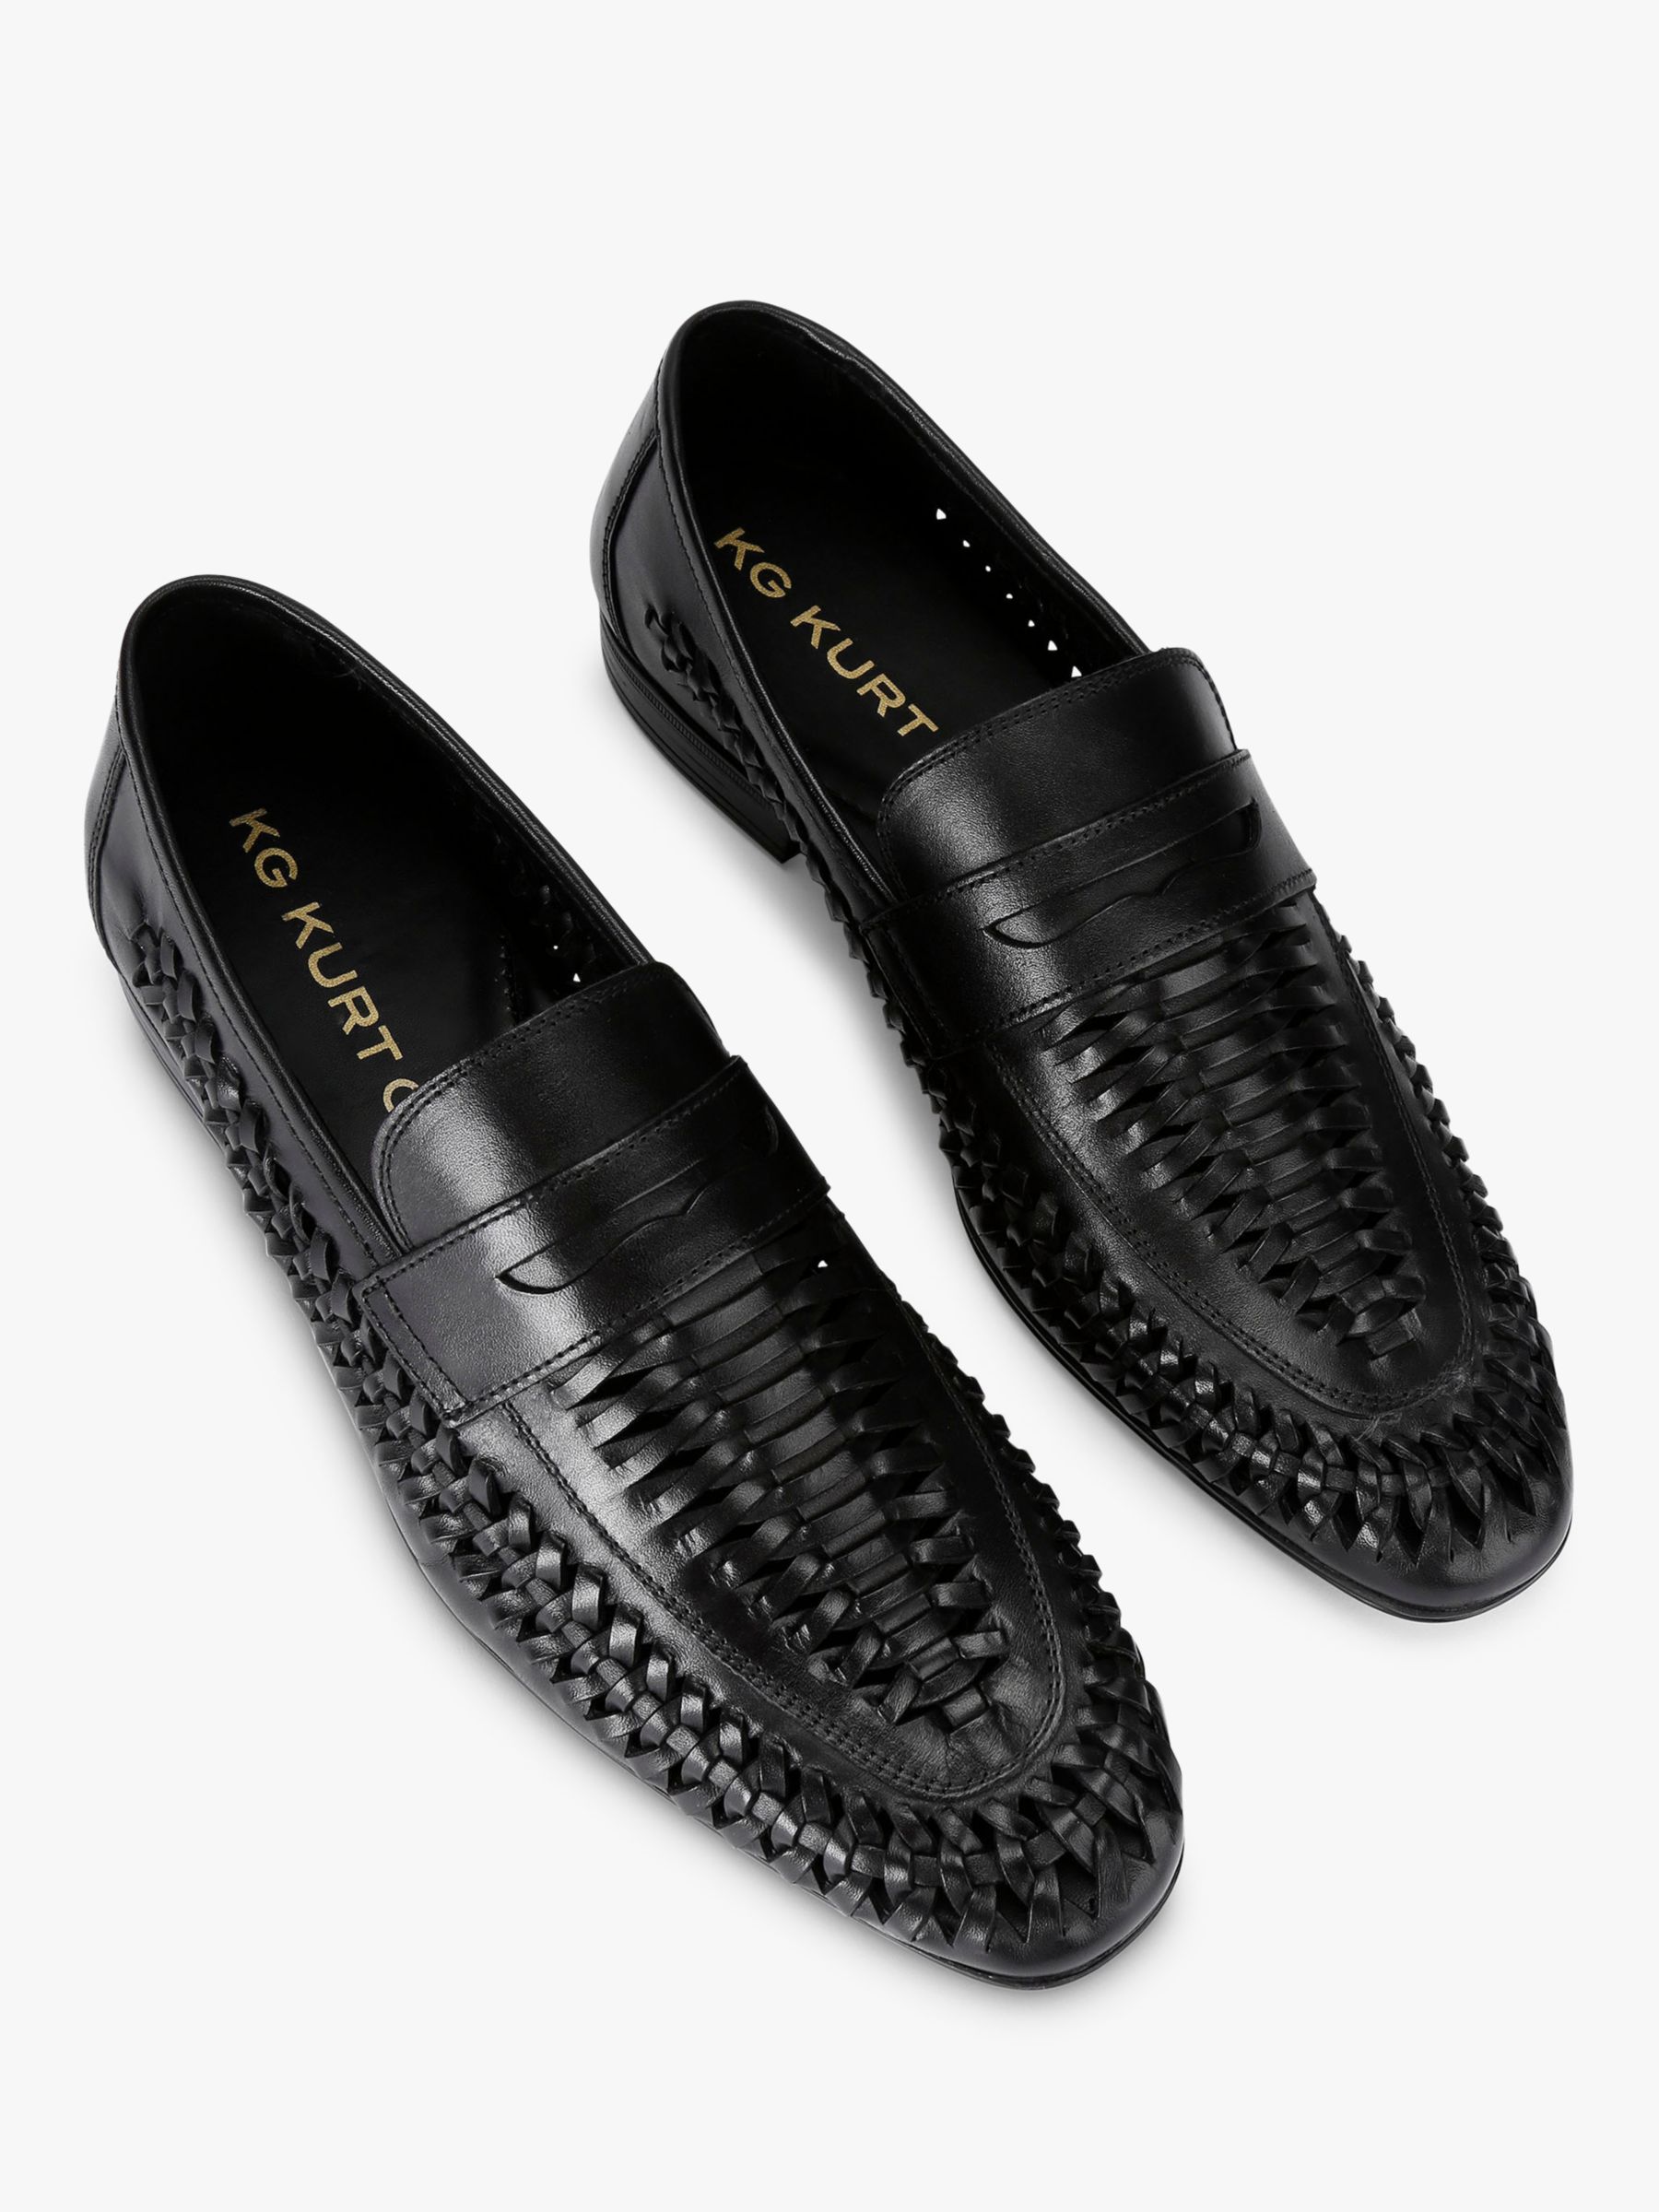 KG Kurt Geiger Fraser Leather Woven Loafers, Black, 6